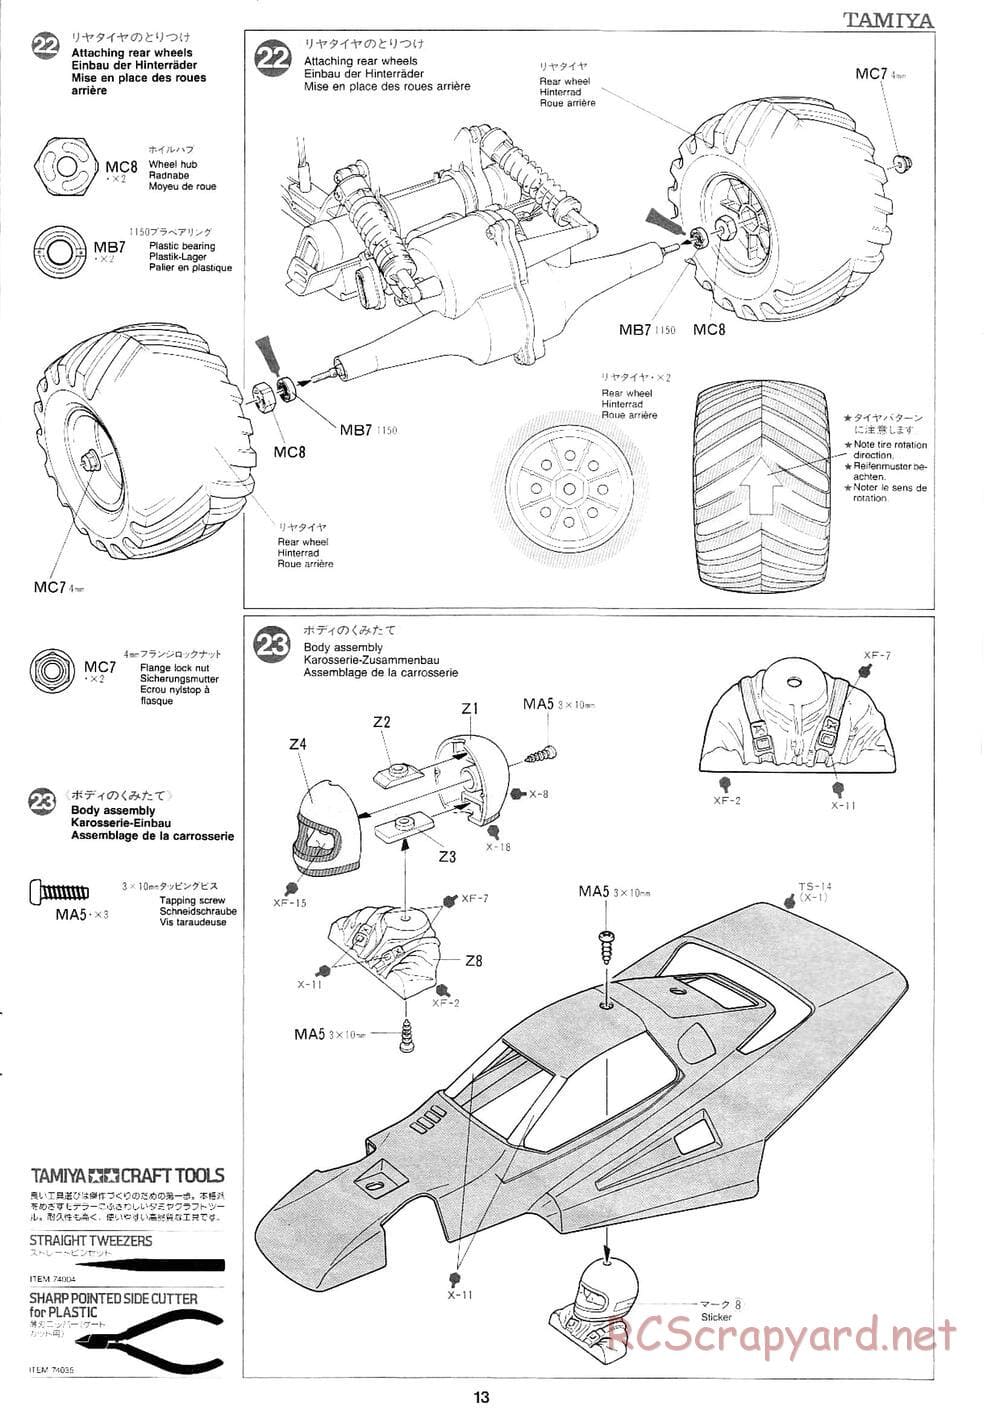 Tamiya - Mad Bull Chassis - Manual - Page 13